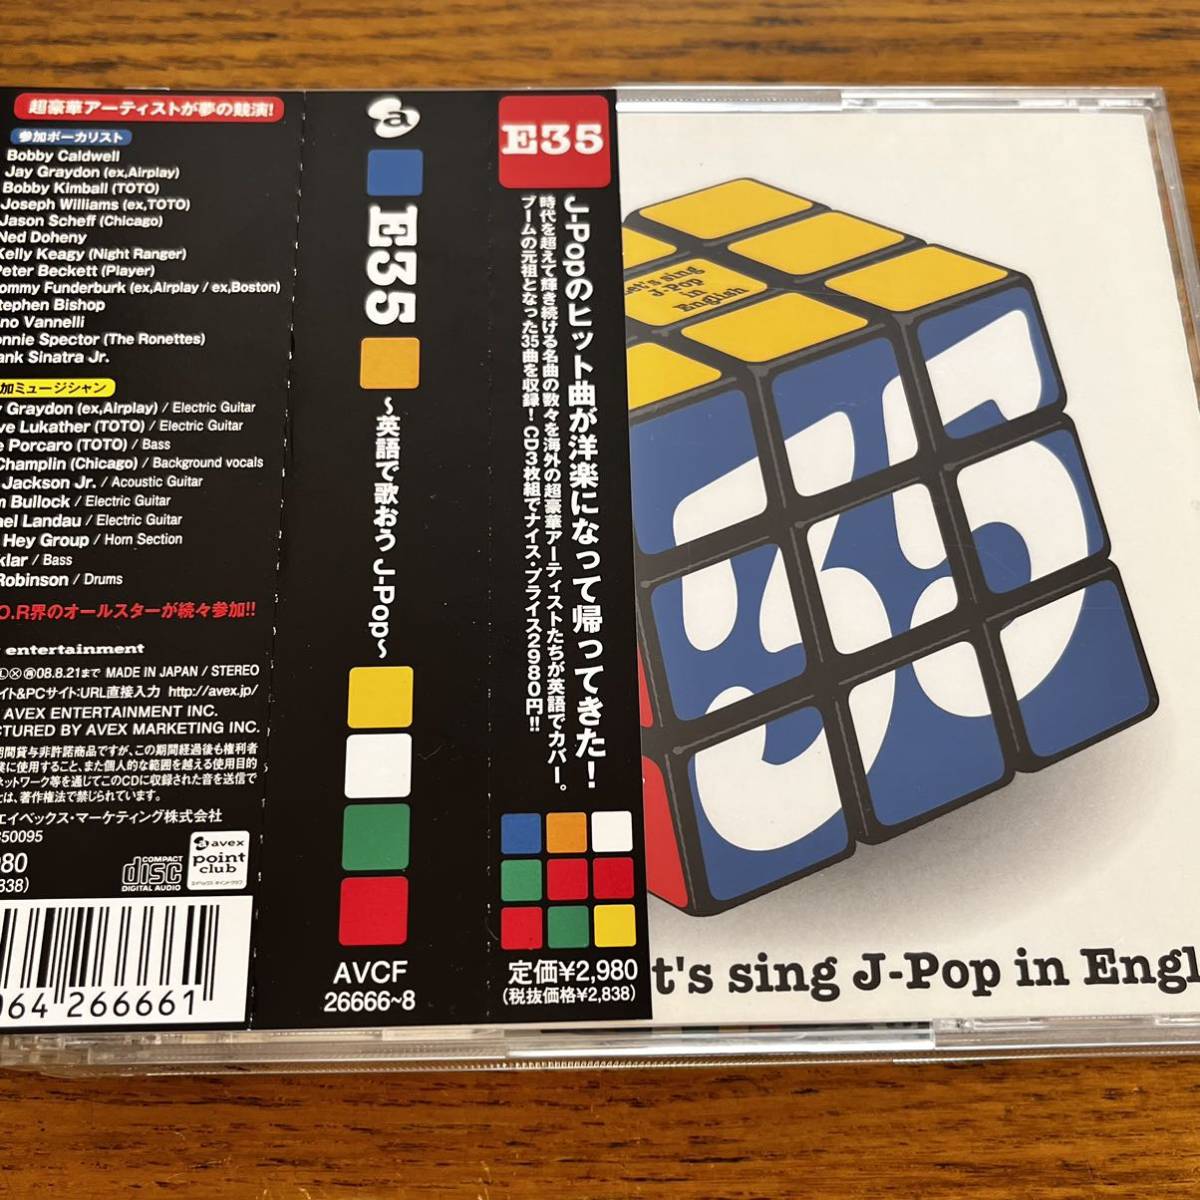 帯付き CD 3枚組 E35 英語で歌おう J-Pop ボビー・コールドウェル ボビー・キンボール スティーヴ・ルカサー ディスク良好_画像1